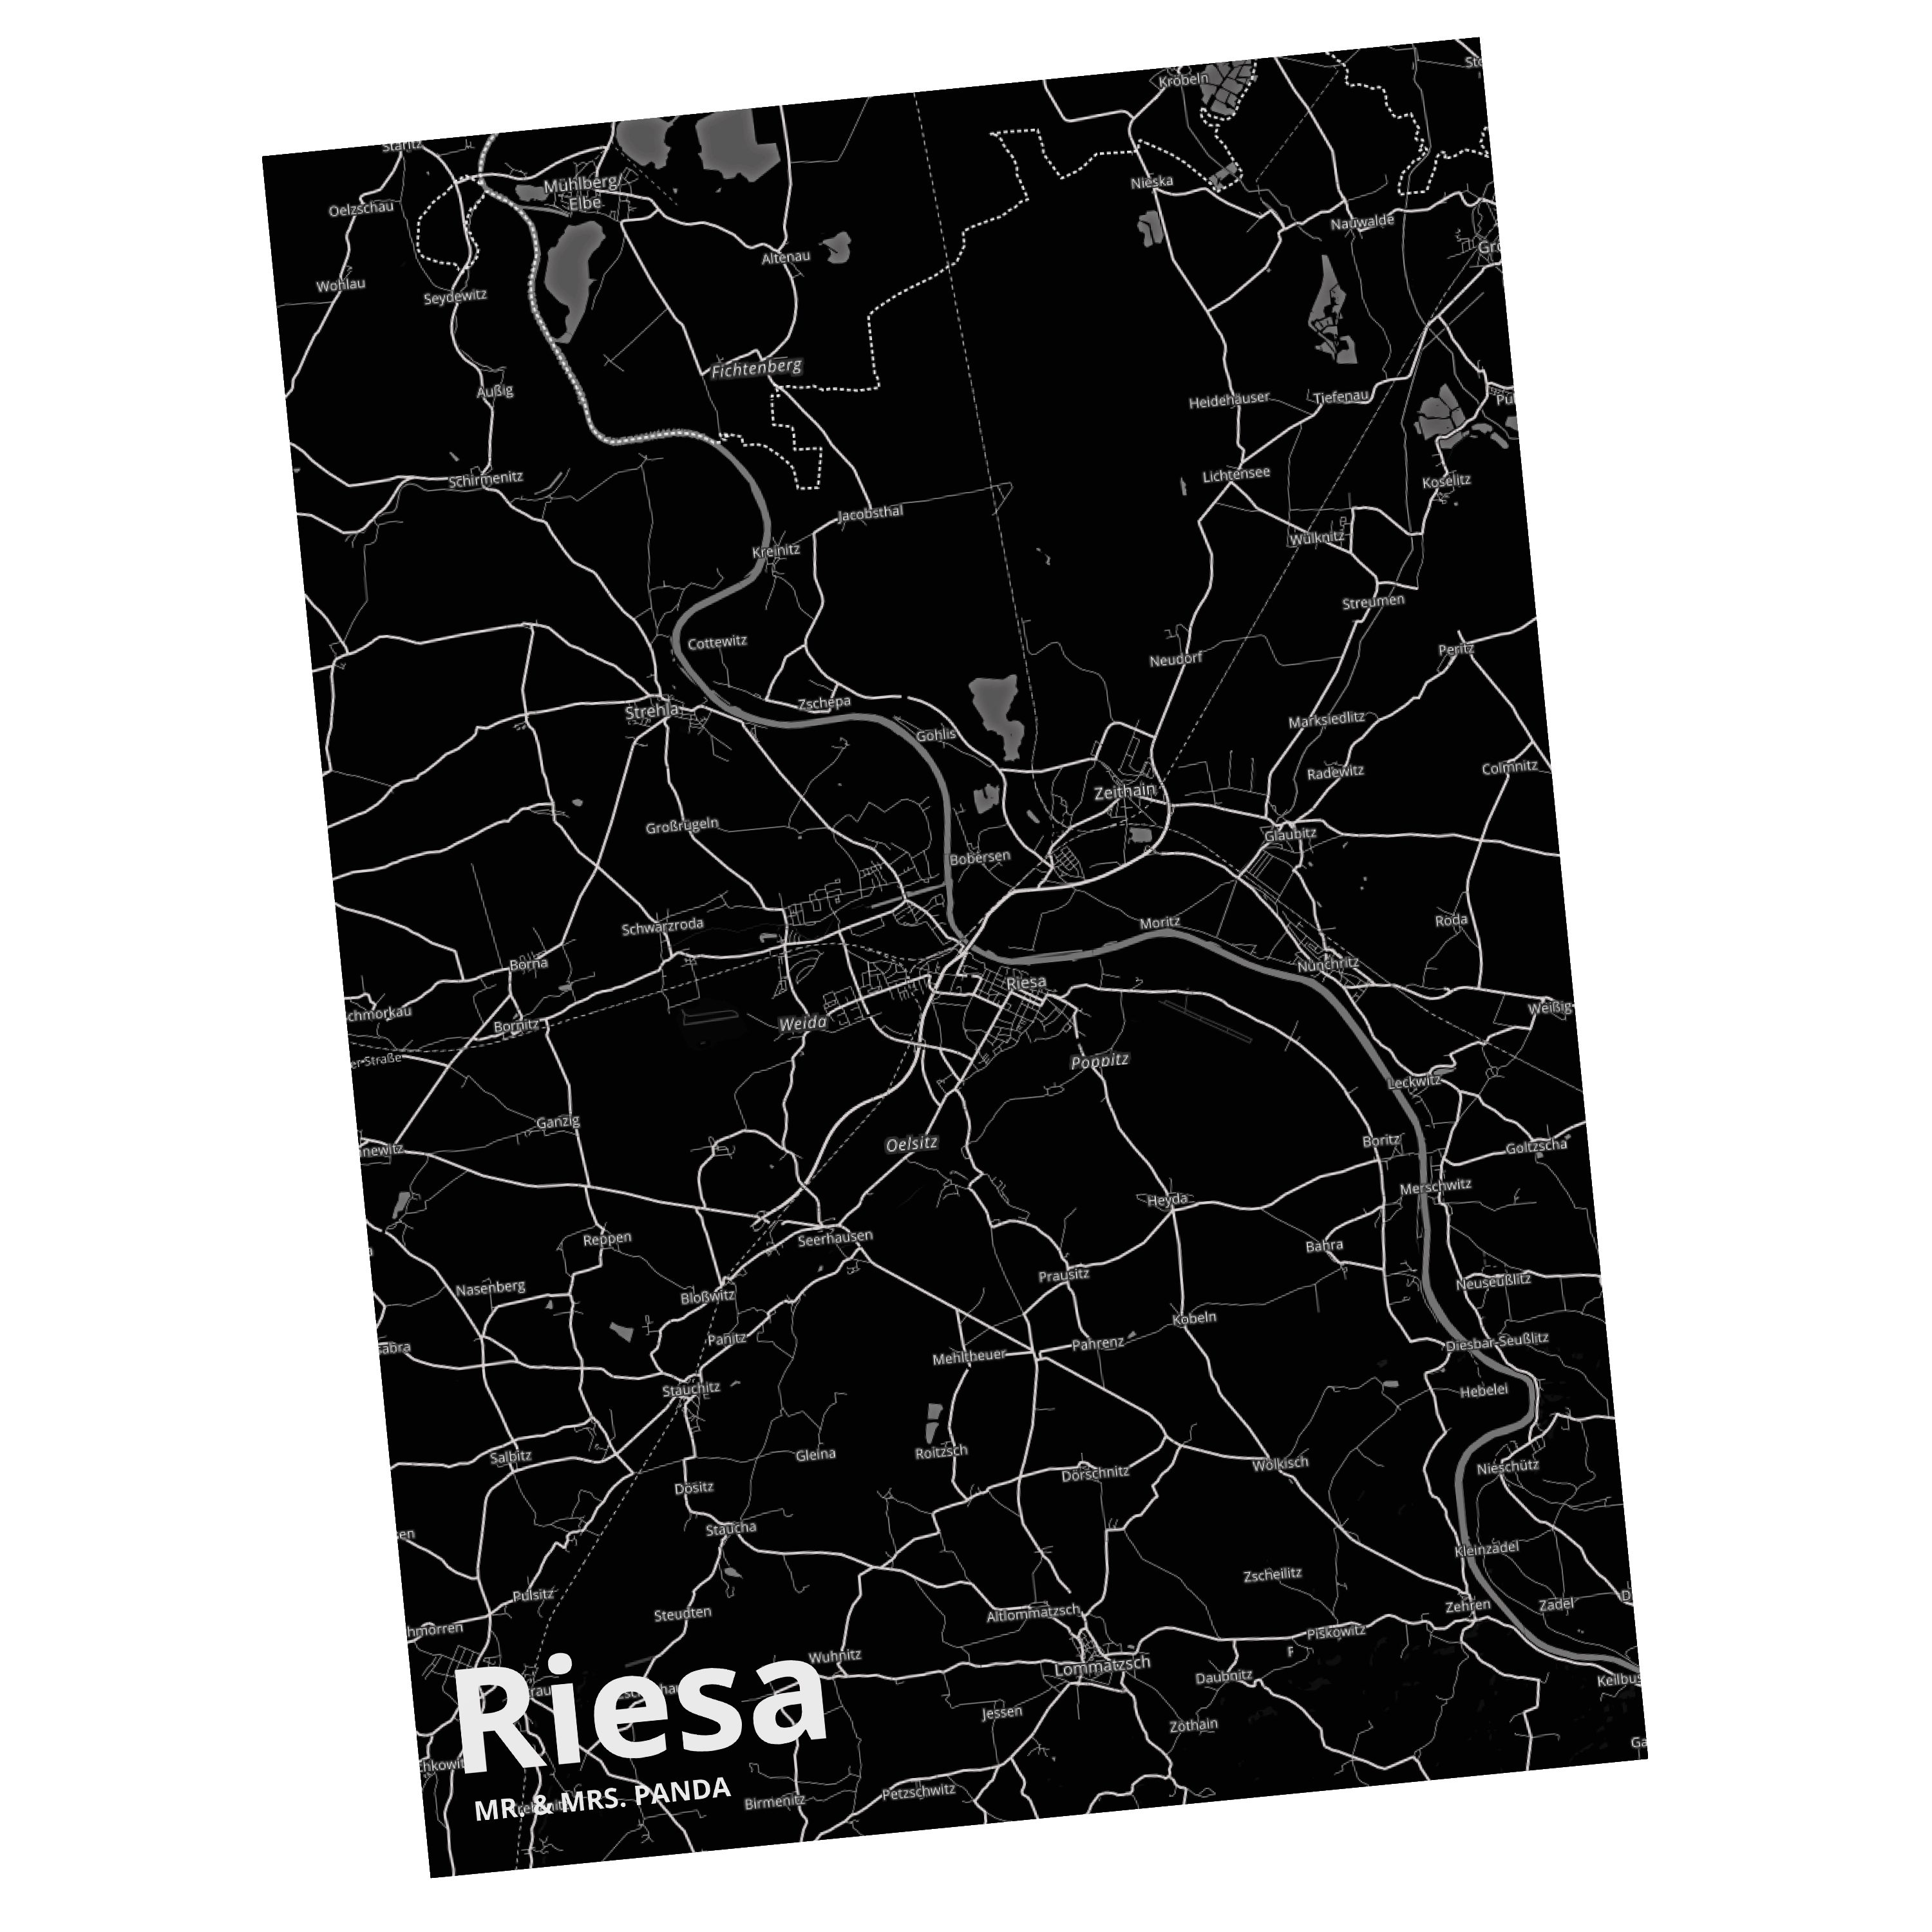 Mr. & Mrs. Panda Postkarte Riesa - Geschenk, Karte, Grußkarte, Einladungskarte, Dorf, Ort, Einla